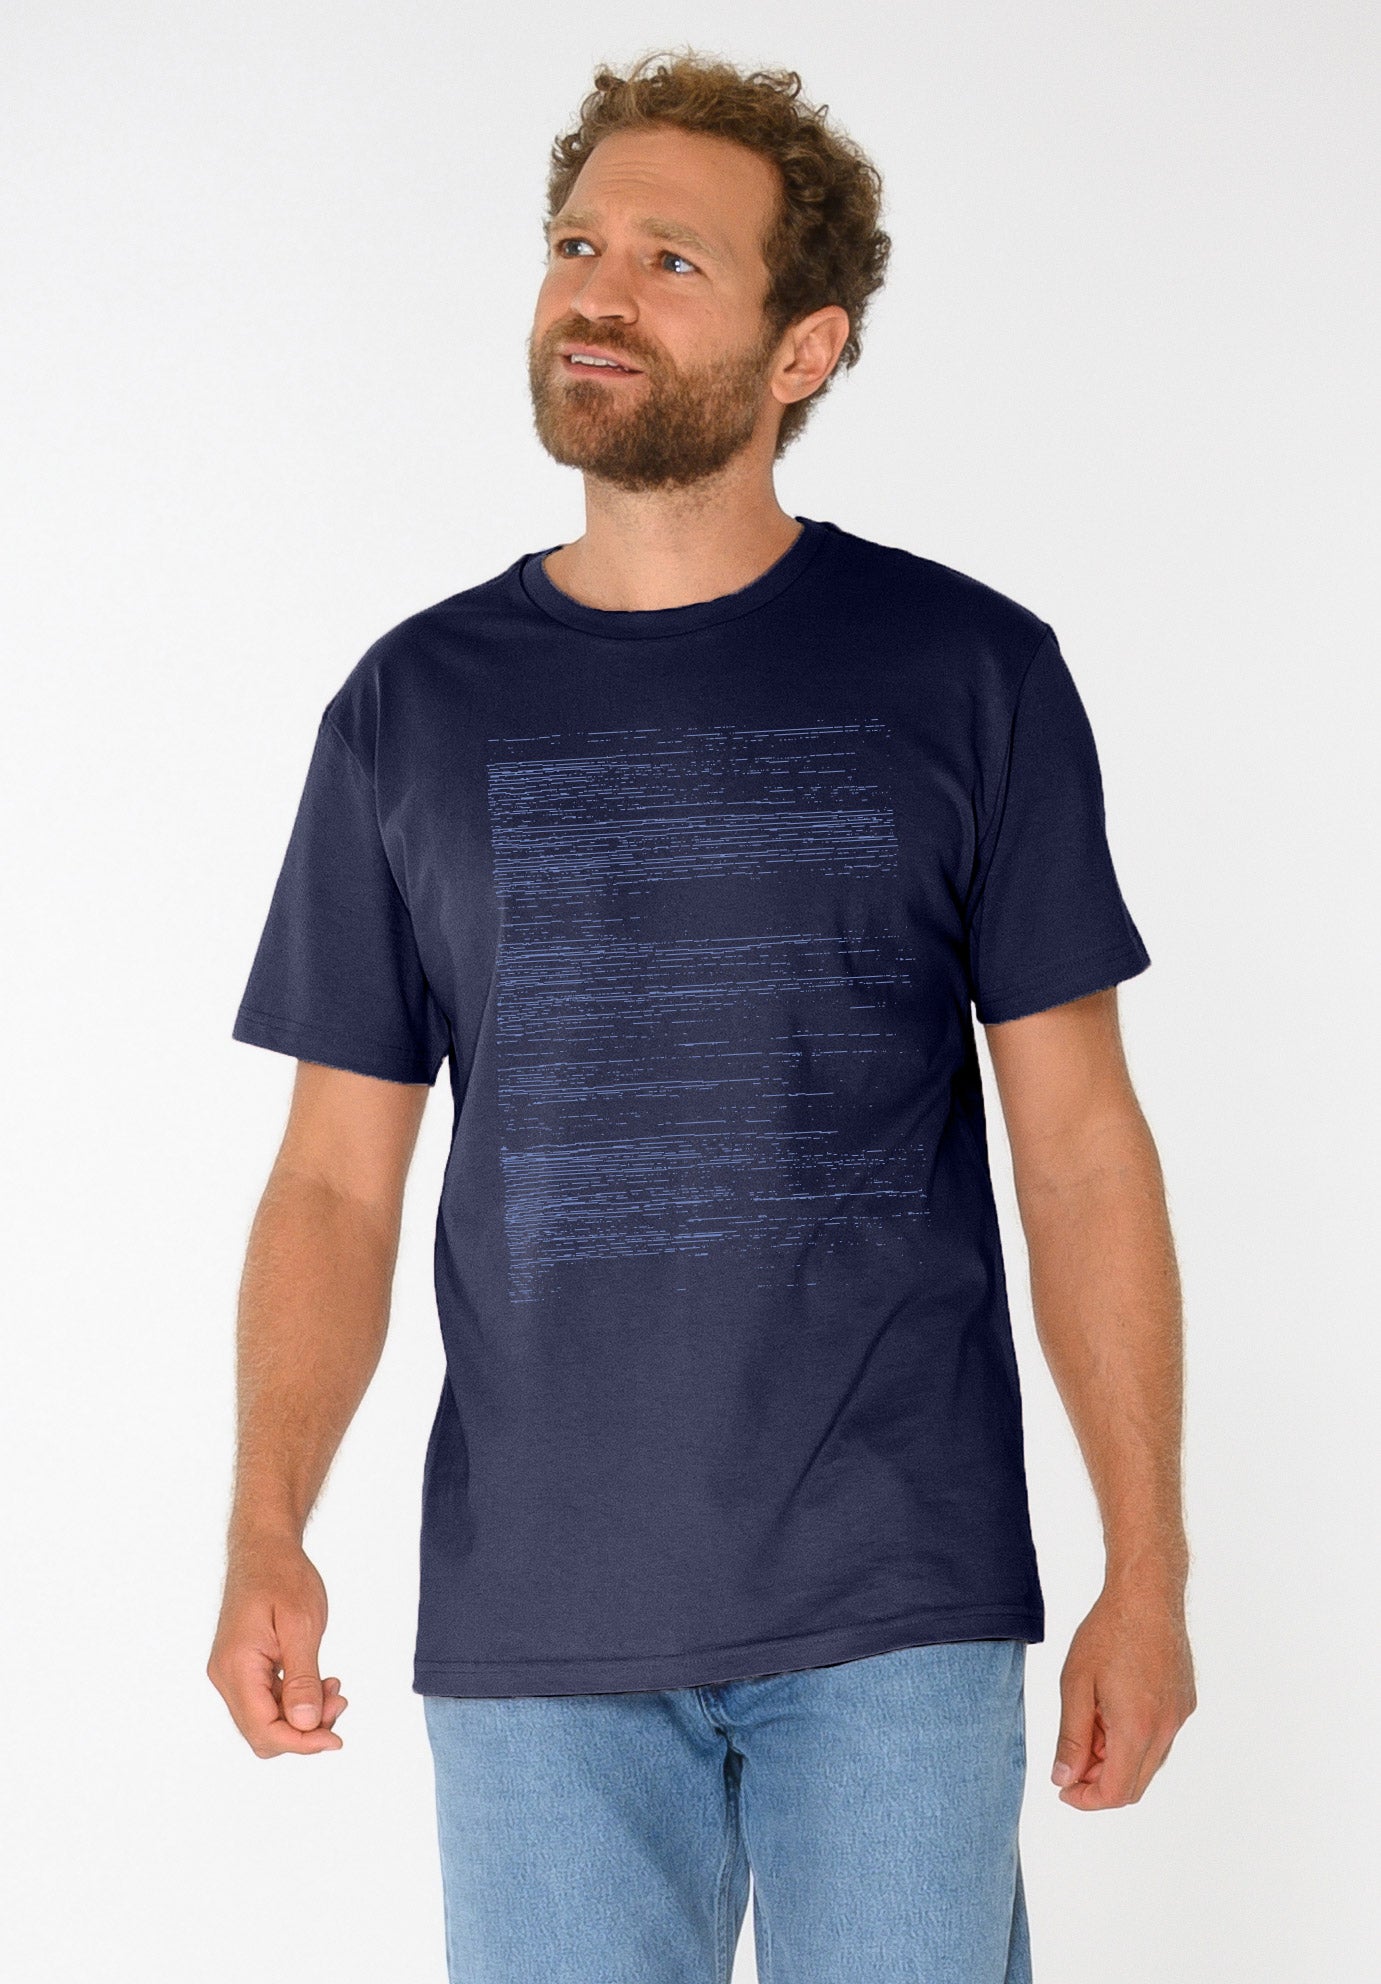 TT02 T-Shirt Strokes (GOTS)